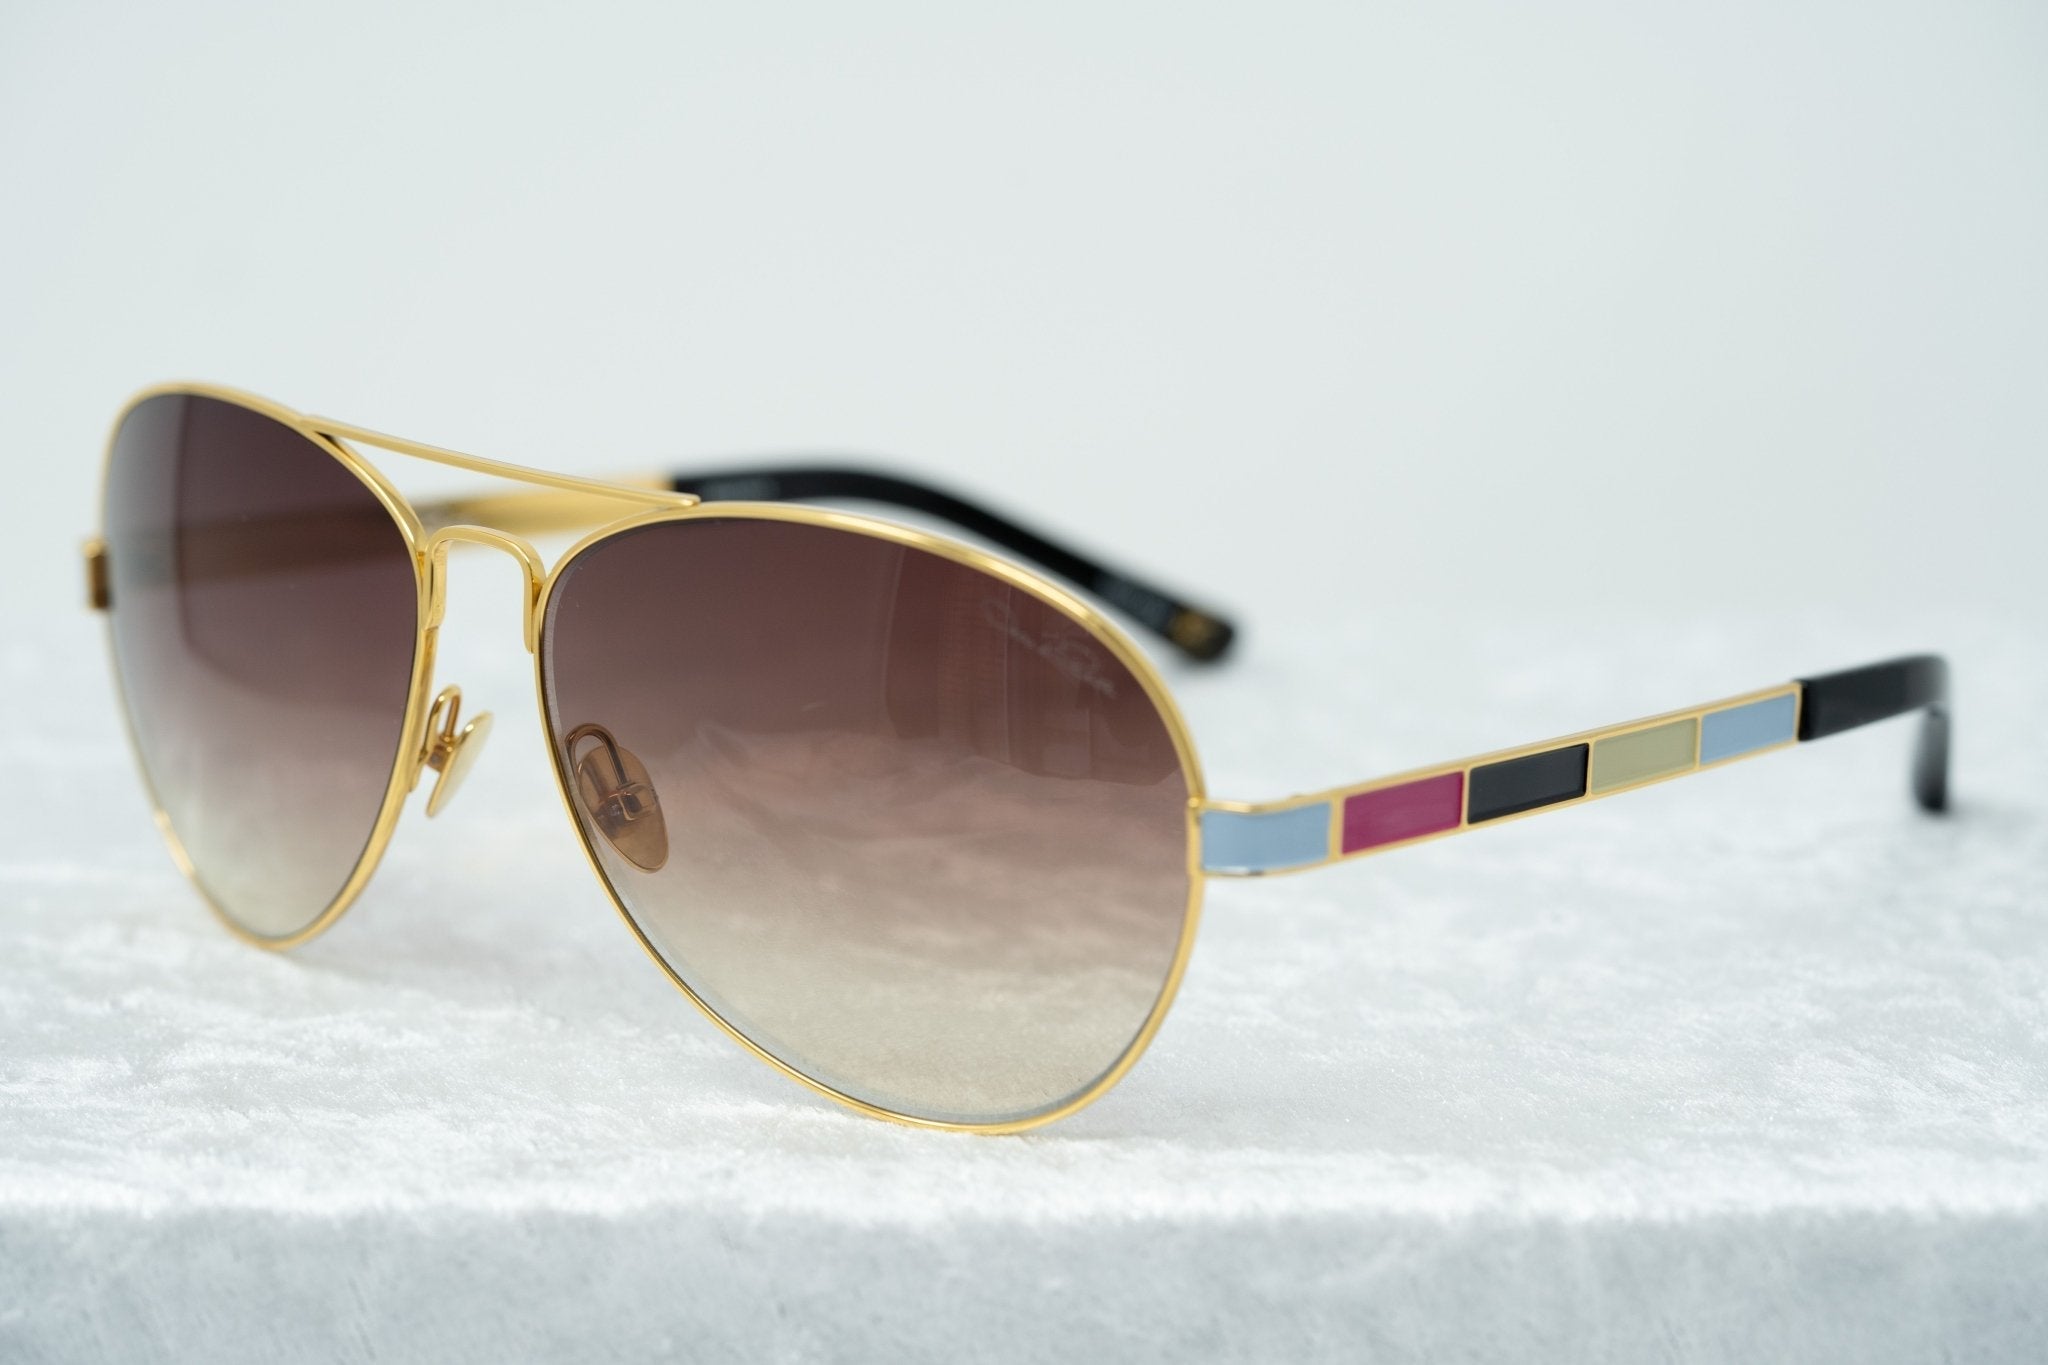 Oscar De La Renta Sunglasses Gold and Brown Graduated Lenses - ODLR44C4SUN - Watches & Crystals